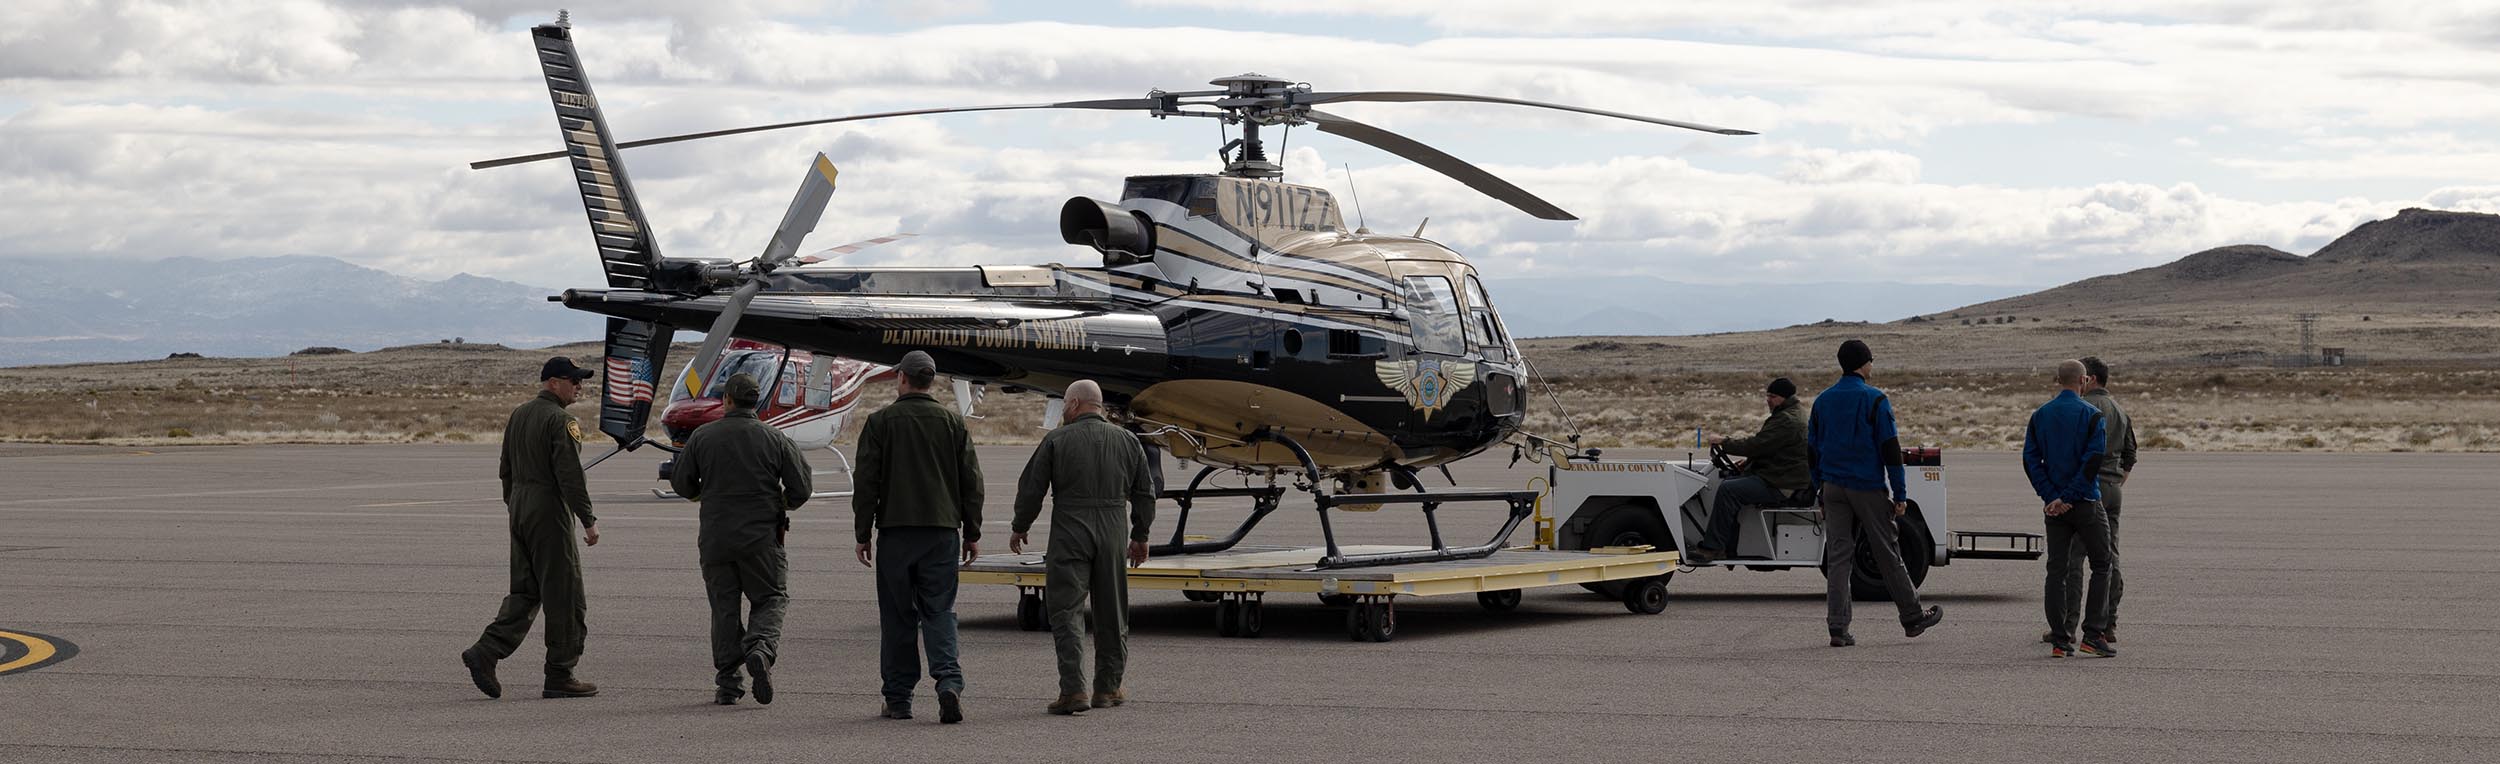 ニュー ベルナリオ郡保安官用ヘリコプター